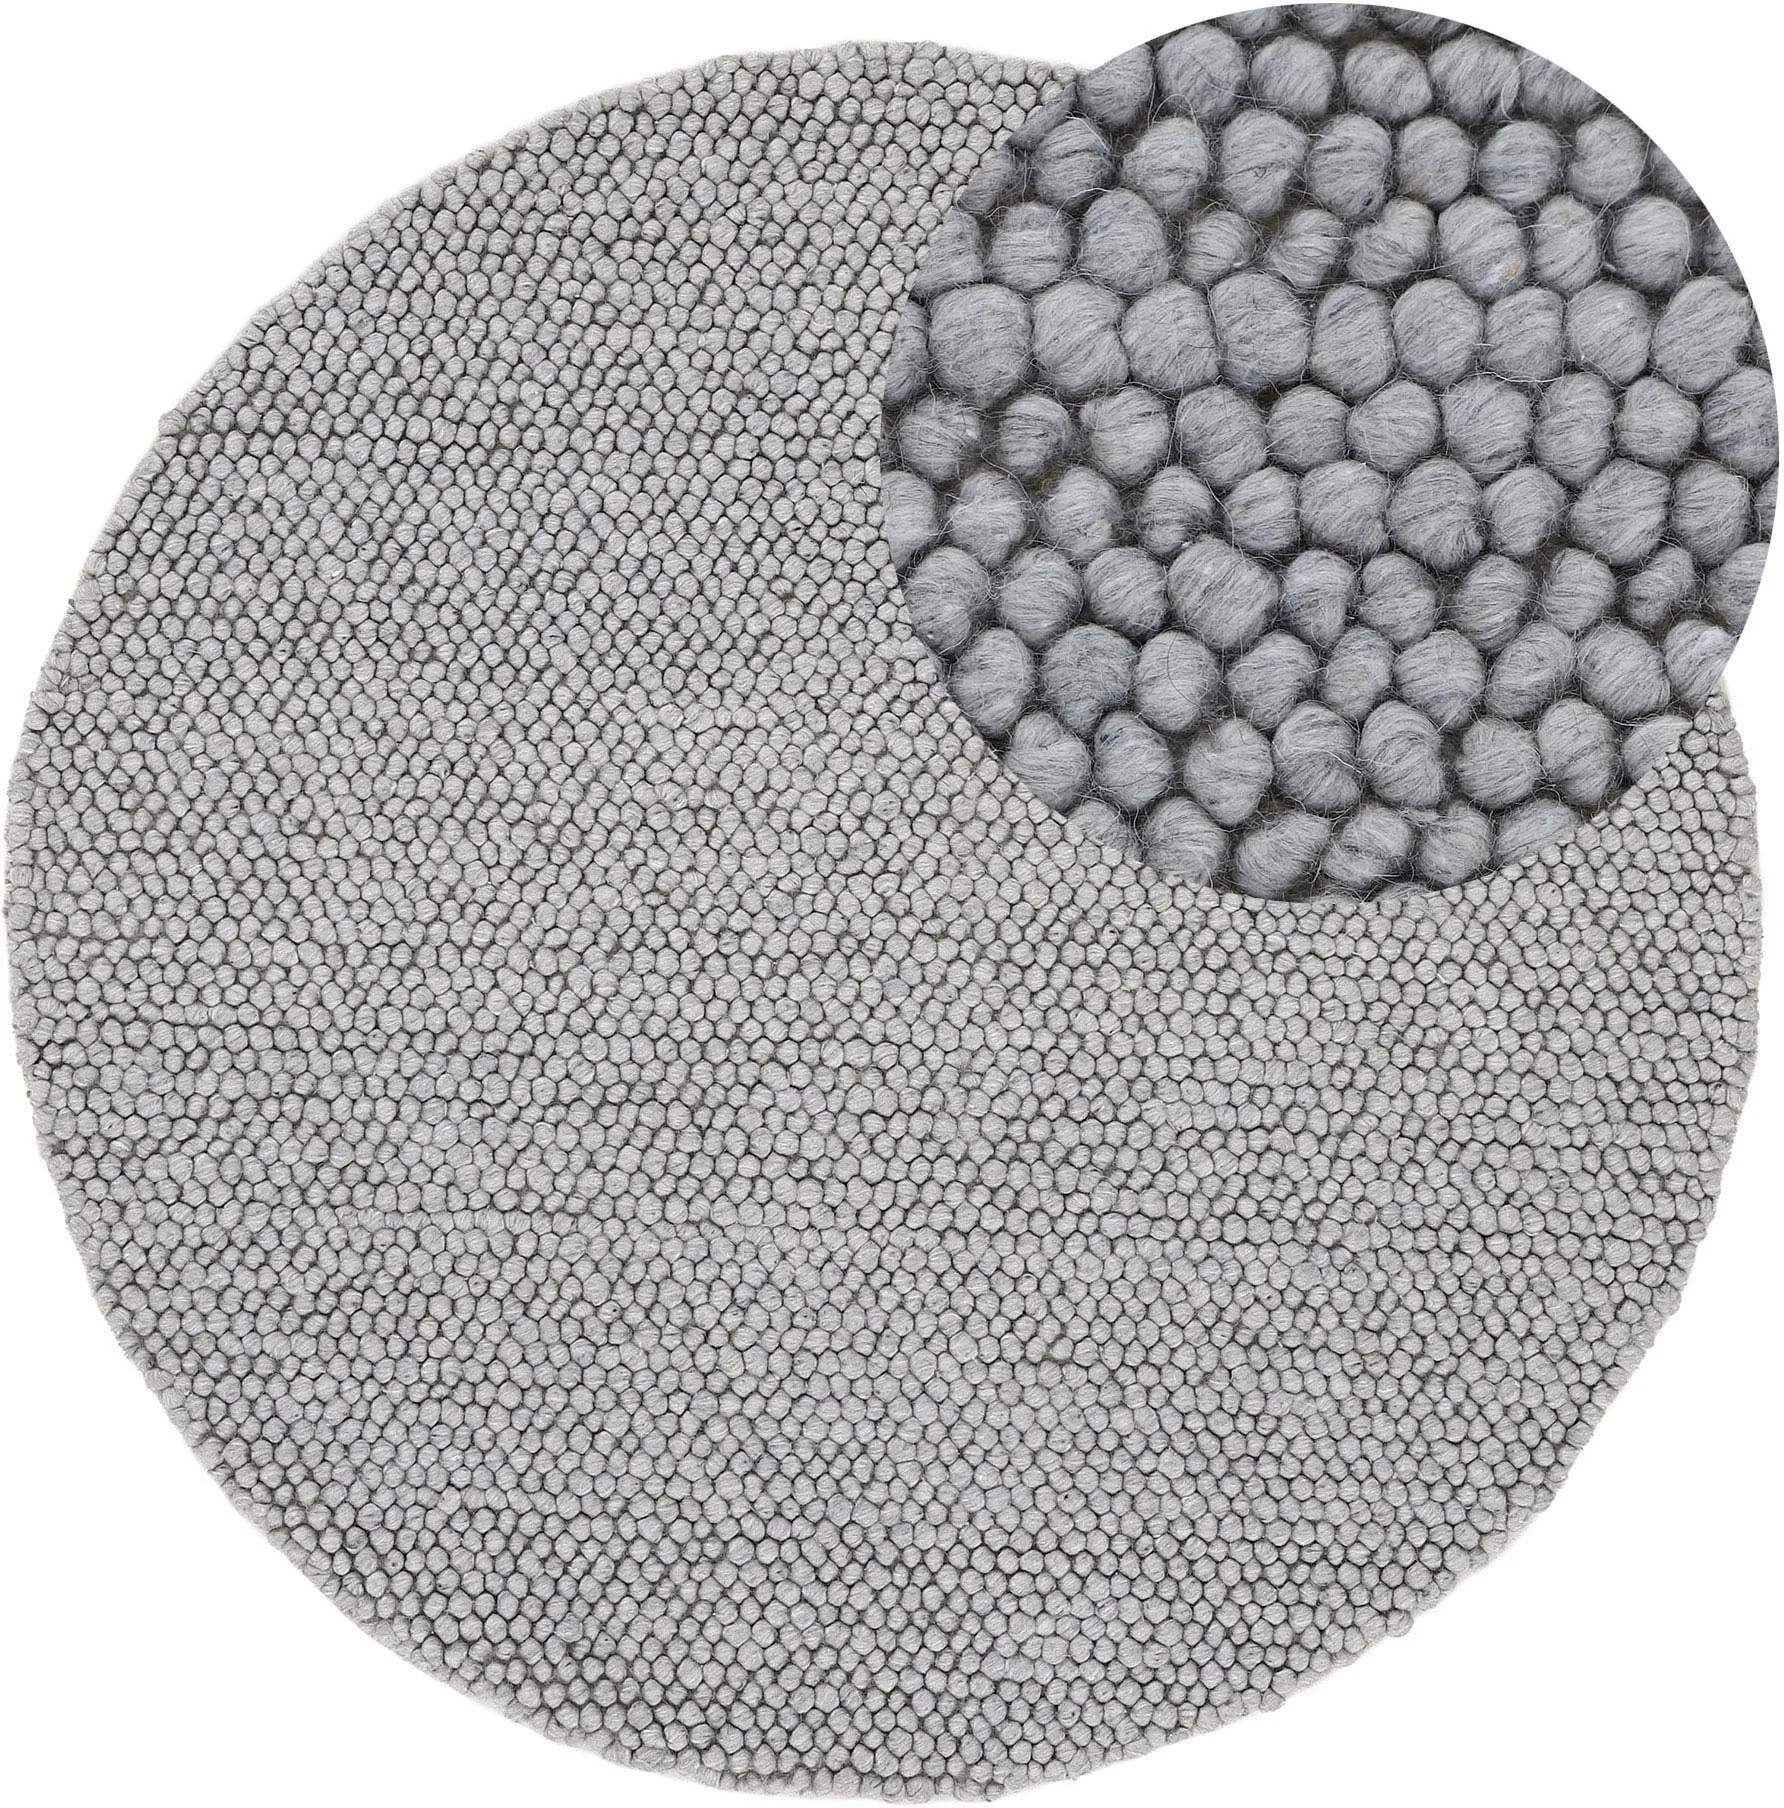 carpetfine Teppich »Calo«, rund, Handweb Teppich, Uni-Farben, meliert, handgewebt, 70% Wolle carpetfine grau Ø 80 cm